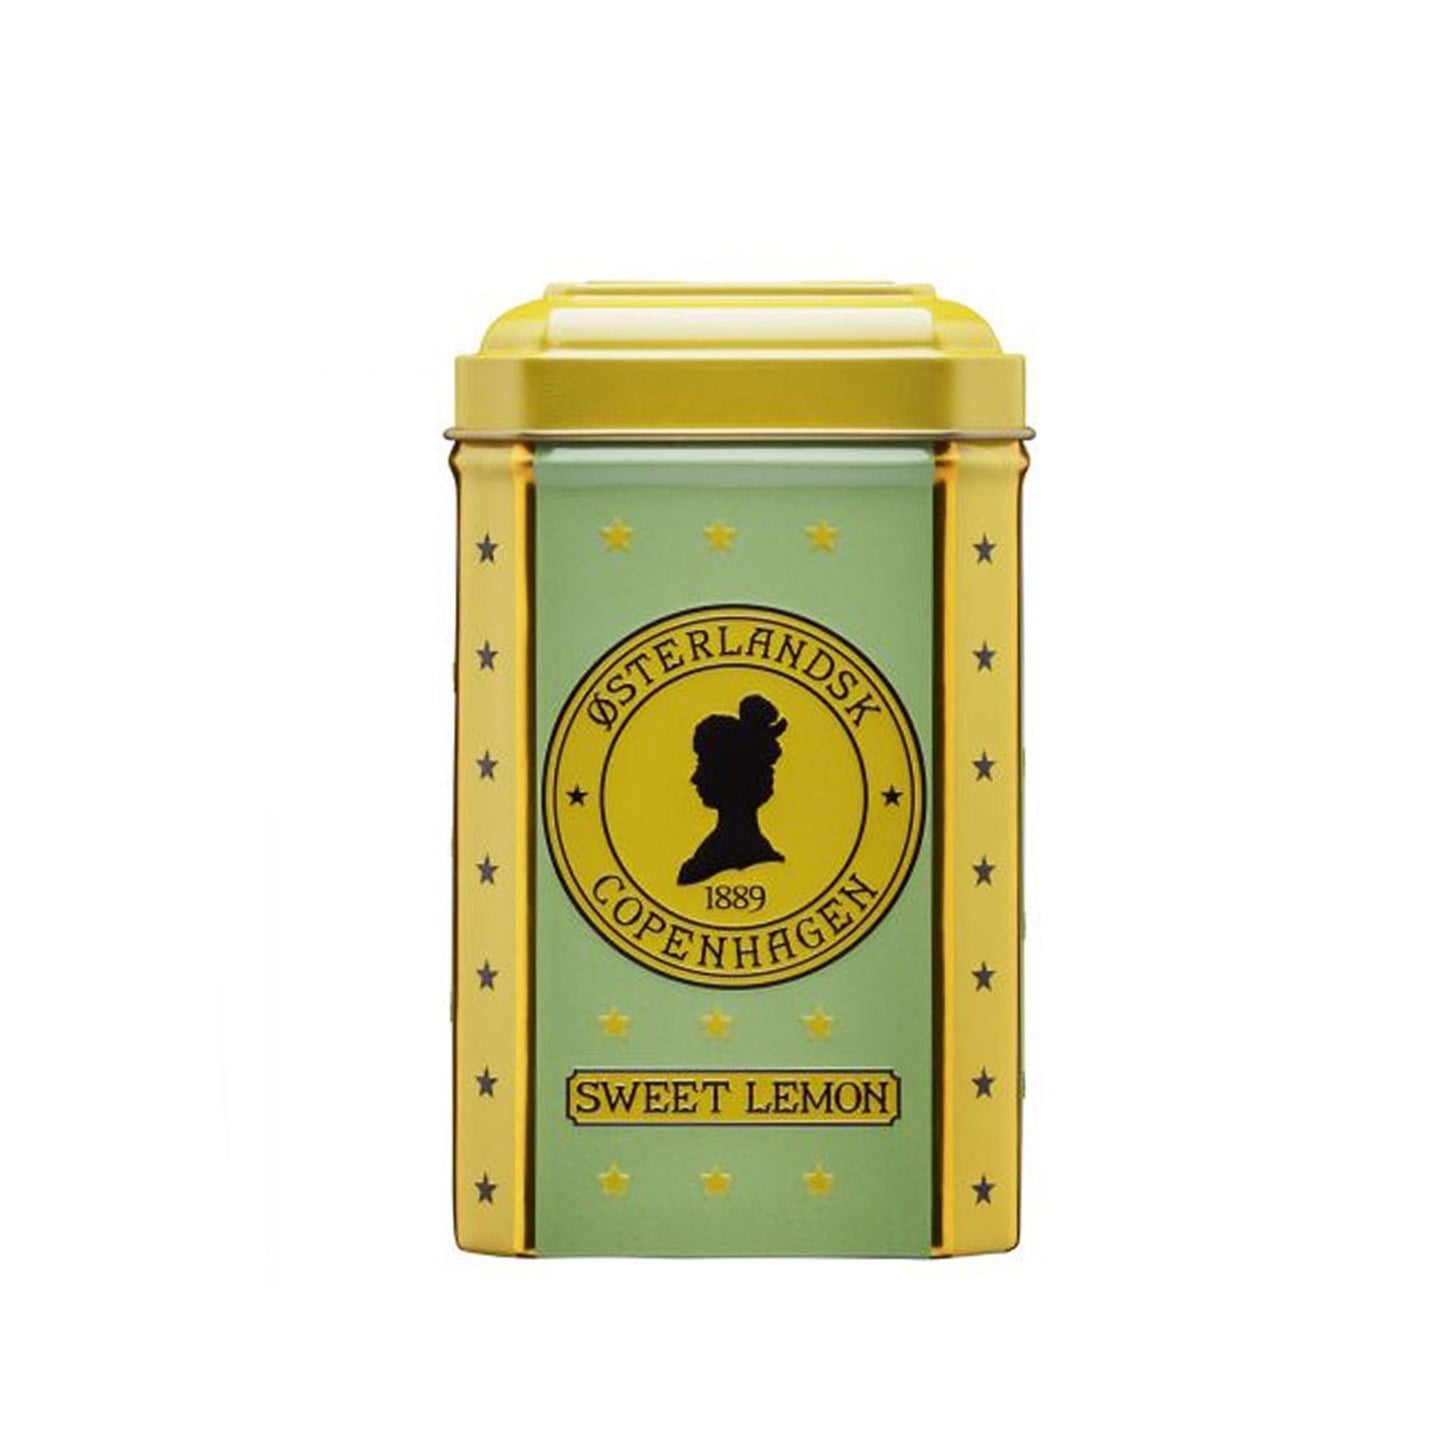 Østerlandsk 1889, Sweet Lemon - 12 stk - brev te